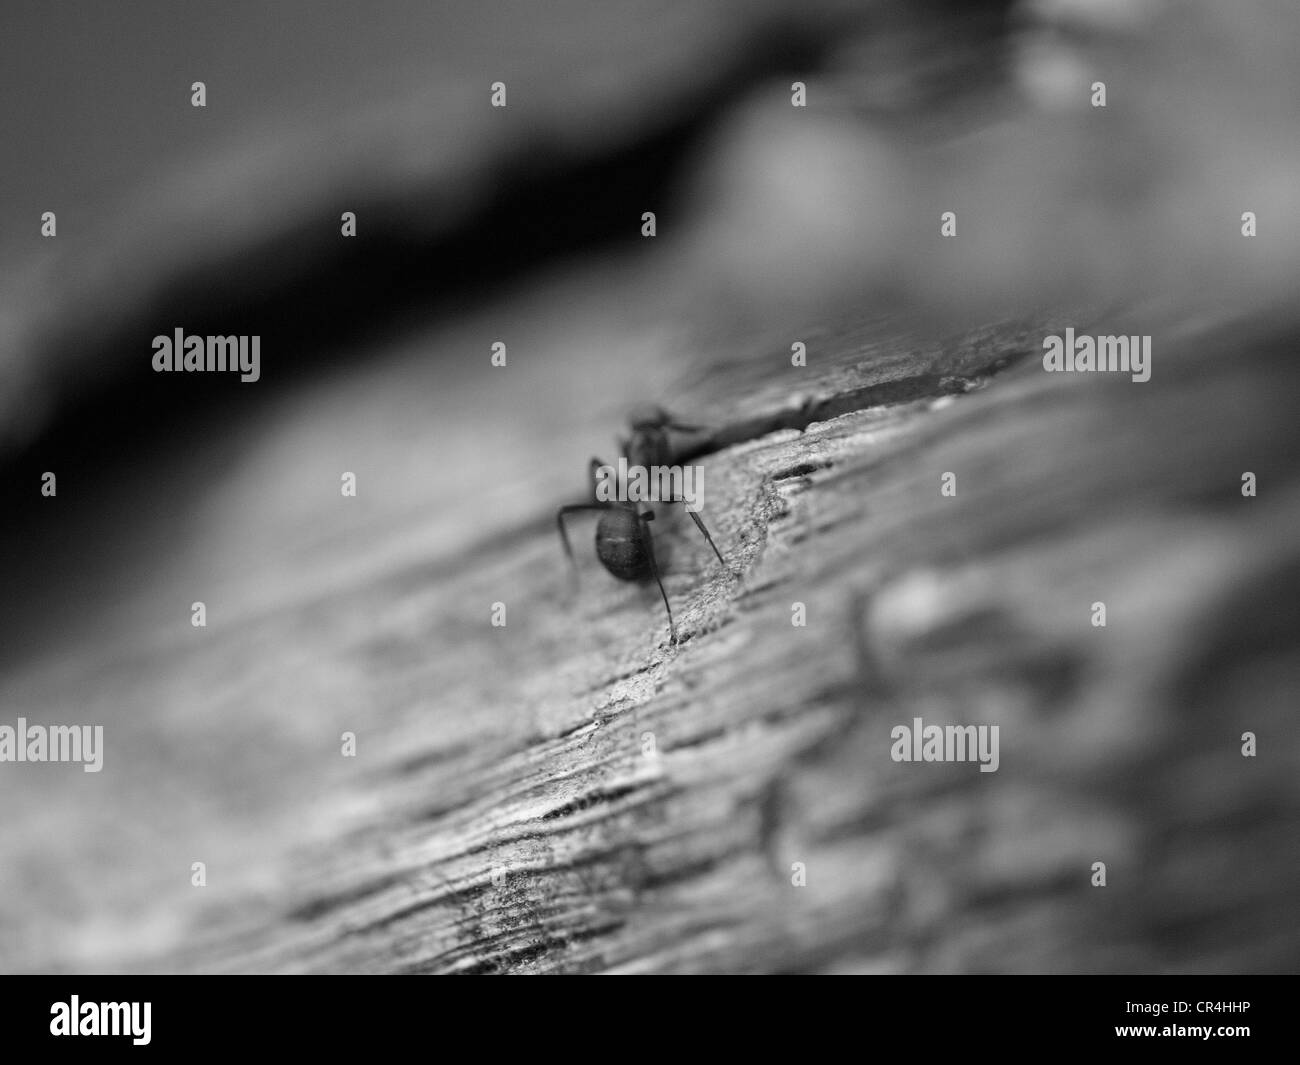 Eine Ameise zu Fuß auf einem Holz. Close-up, schwarz-weiß-Fotografie. Stockfoto